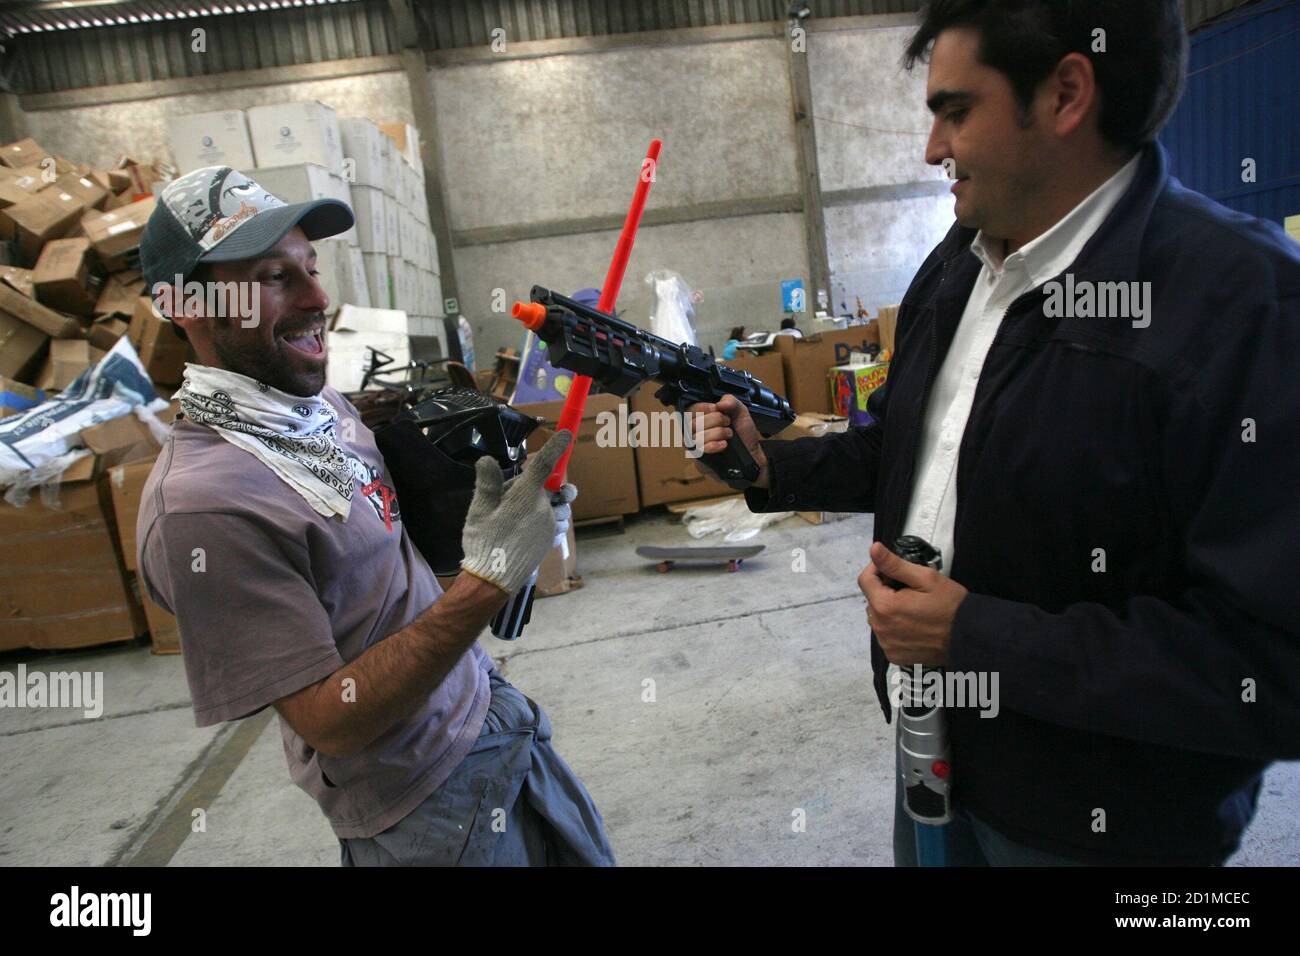 Un cliente (R) prueba una pistola de juguete mientras un trabajador sostiene una espada en una tienda de juguetes reciclados en Santiago 3 de noviembre de 2008. Más de 140 toneladas